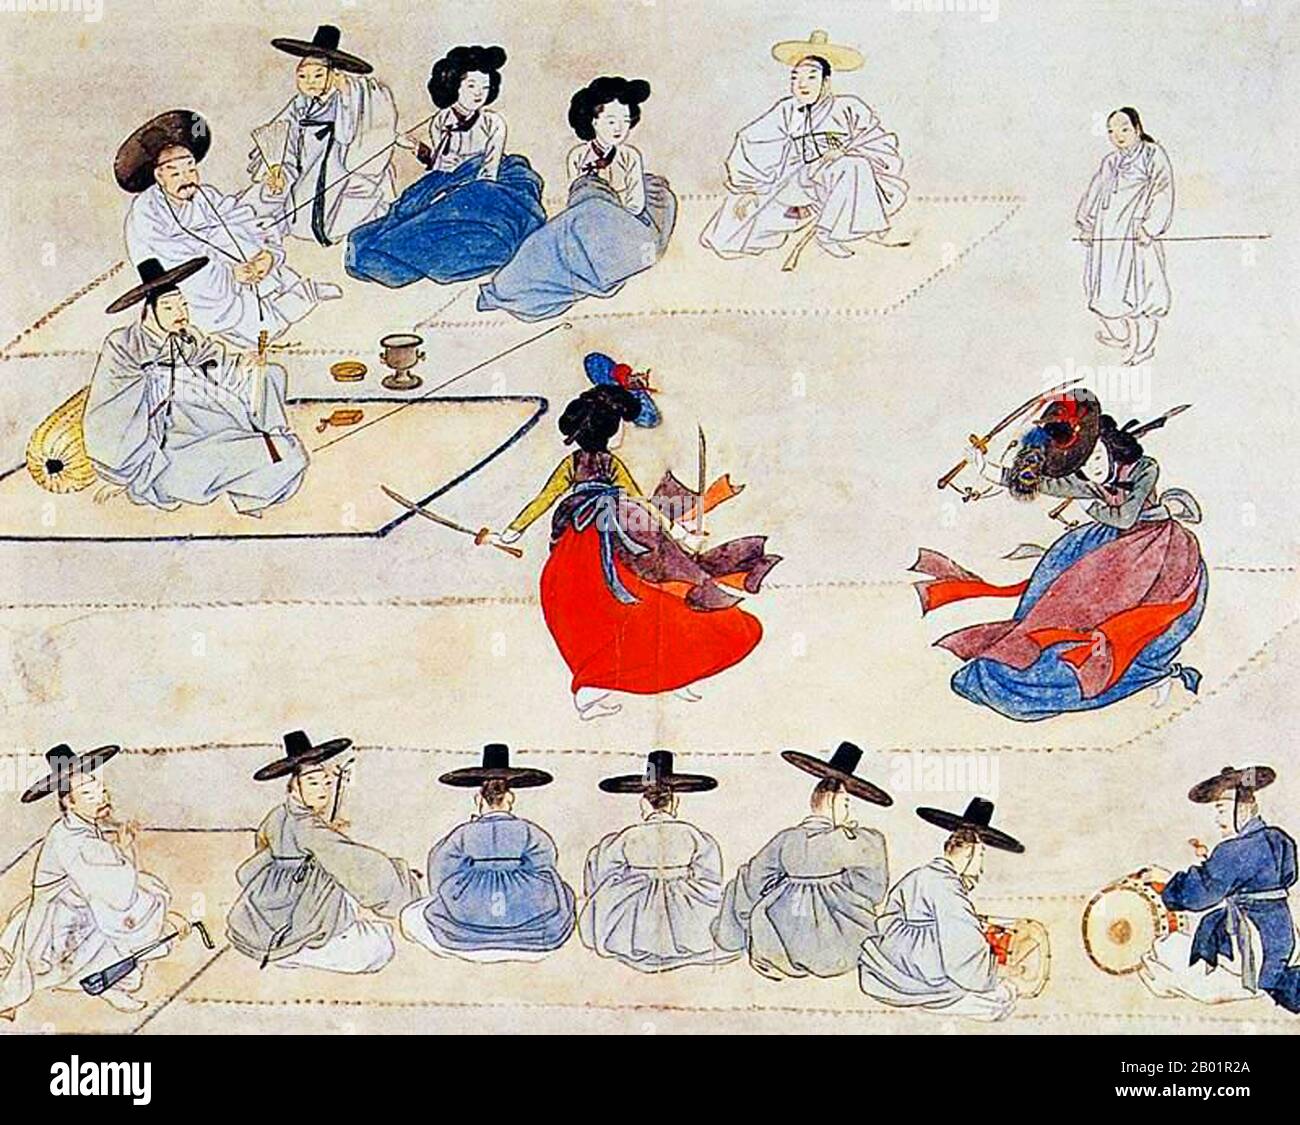 Corea: Due donne che ballano con le spade. Pittura dal 'Hyewon Pungsokdo', c. 1805. Hyewon Pungsokdo è un album di dipinti di genere di Shin Yunbok o Hyewon (1758-1813), uno dei più famosi pittori di genere del tardo periodo Joseon (1390-1910). Questo album è stato designato come il 135° tesoro nazionale della Corea del Sud e conservato dal Gansong Art Museum di Seongbuk-GU, Seul. Foto Stock